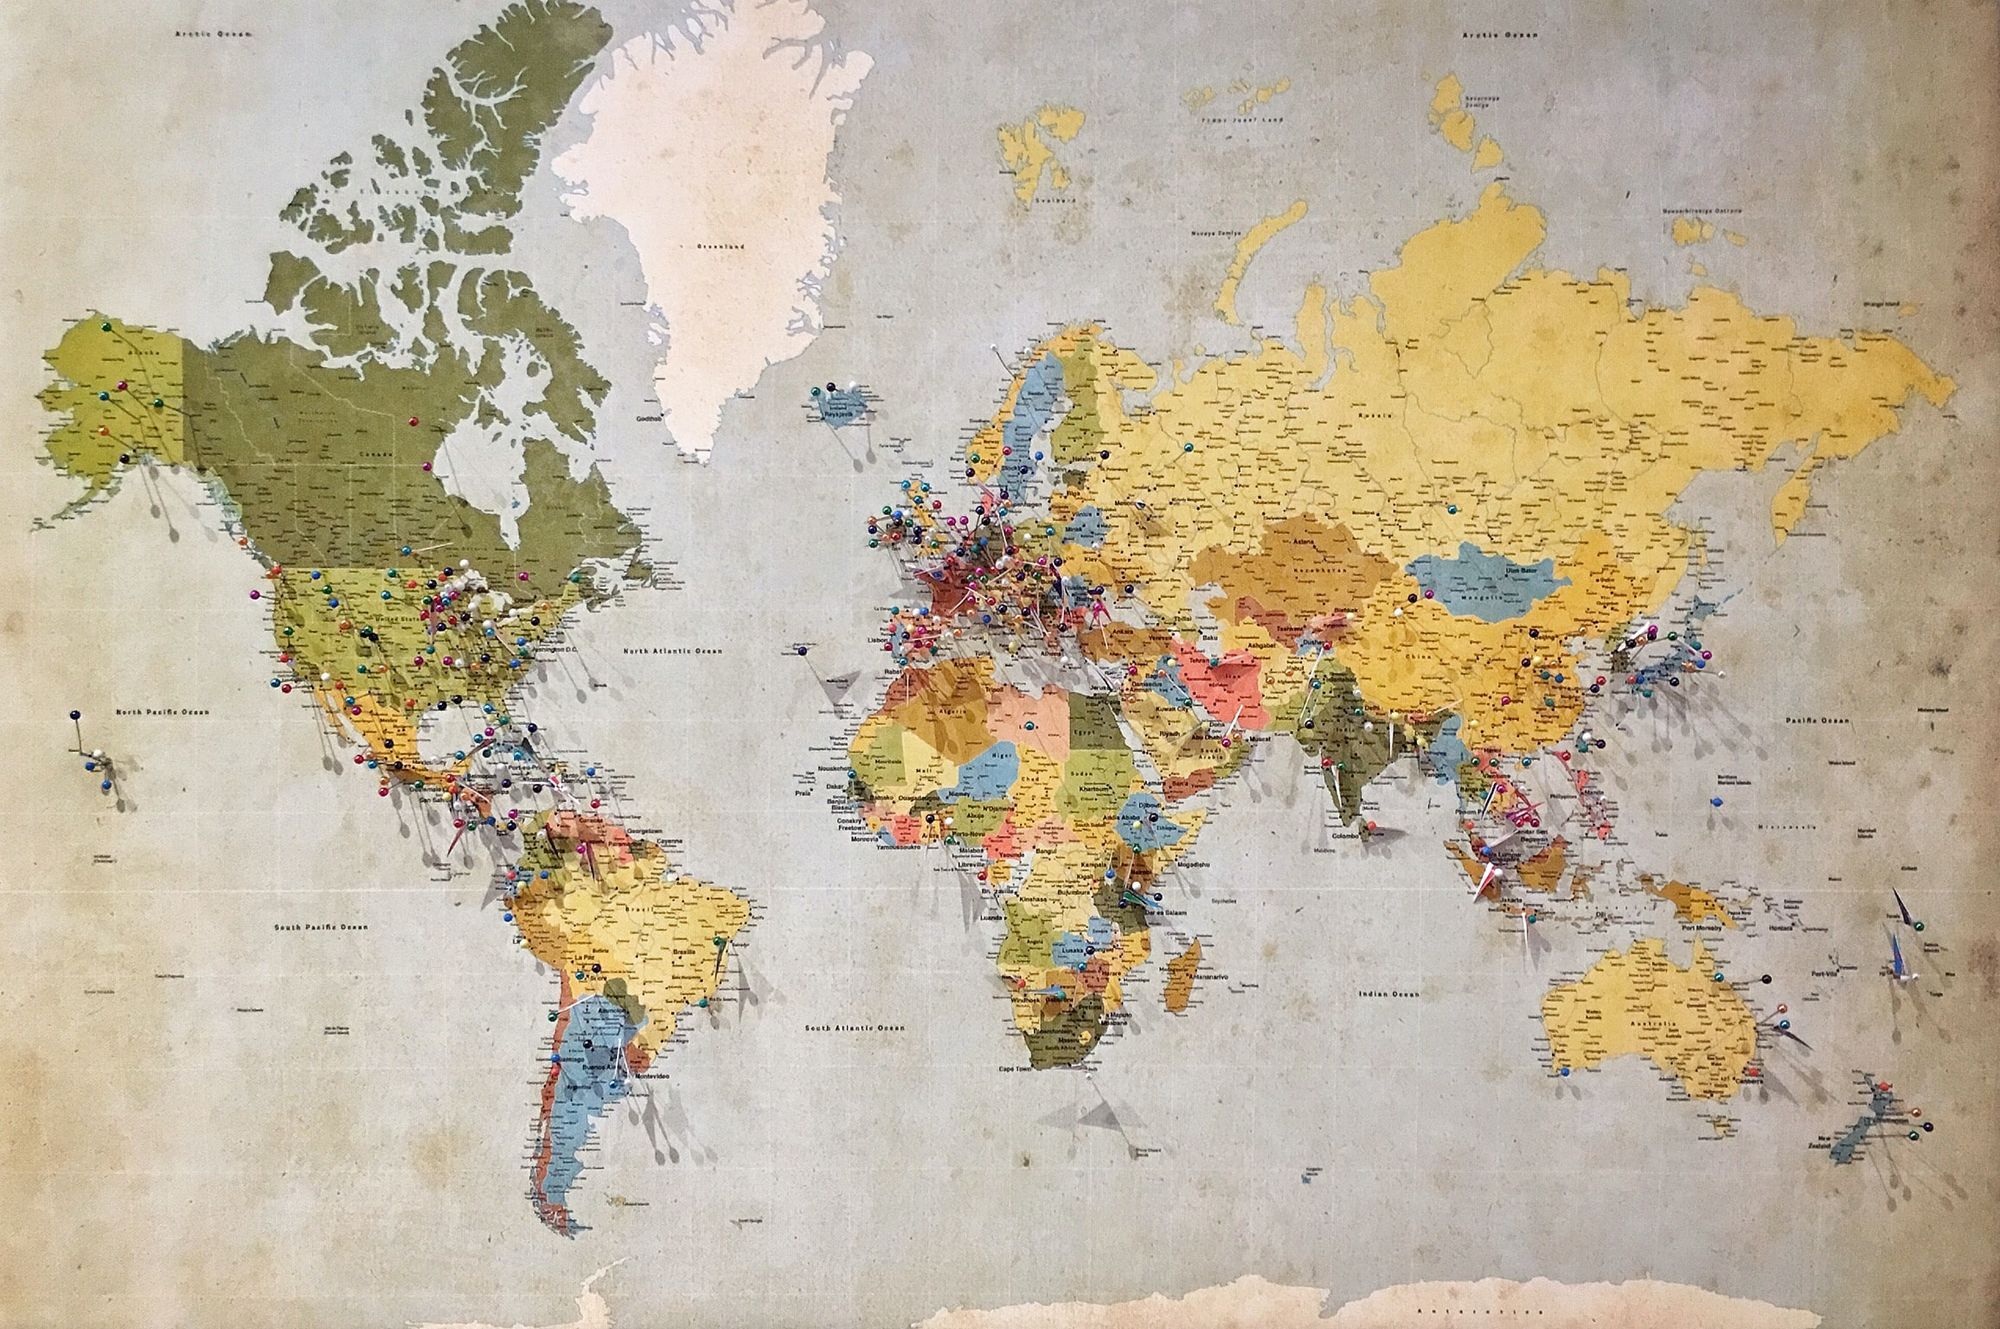                     Kazimierz Wóycicki: Mapa świata bez apokalipsy
                              